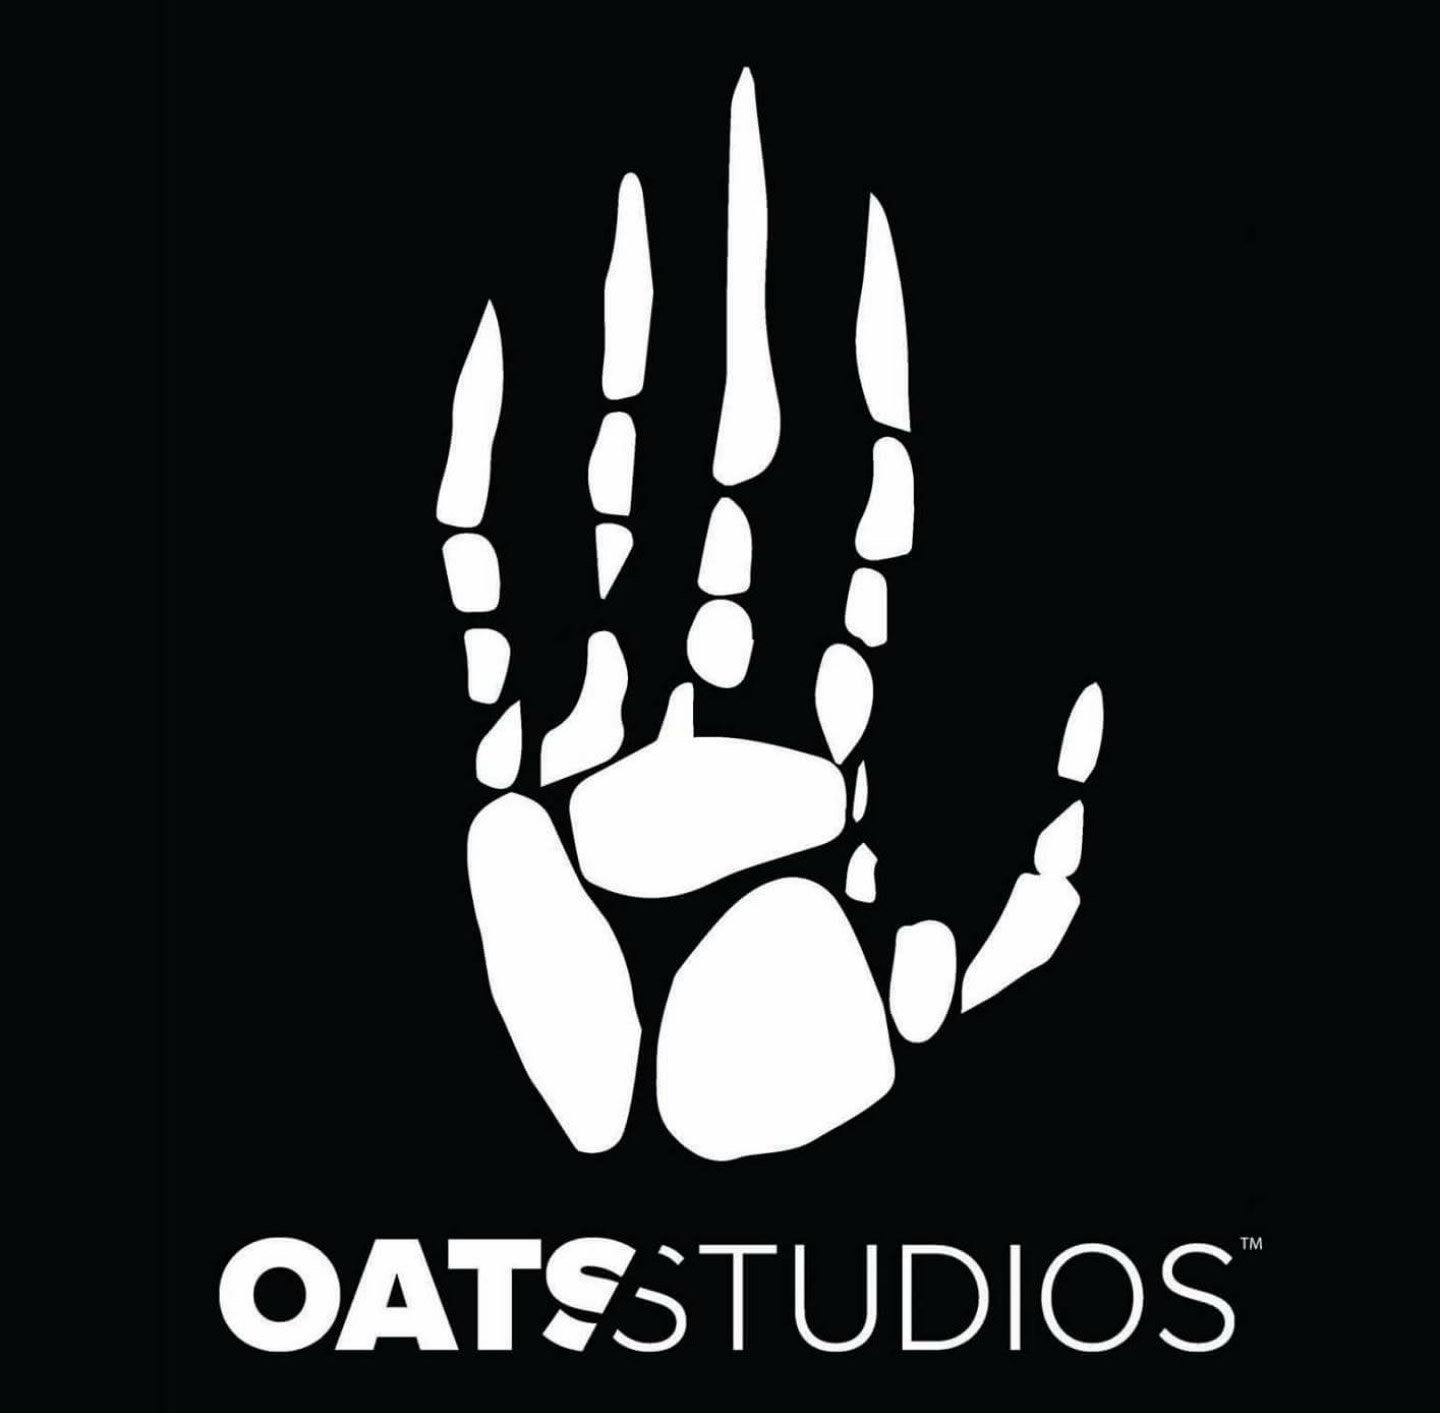 Série Oats Studios Volume 1 | Curtas de ficção científica de Neill Blomkamp chega à Netflix em outubro de 2021